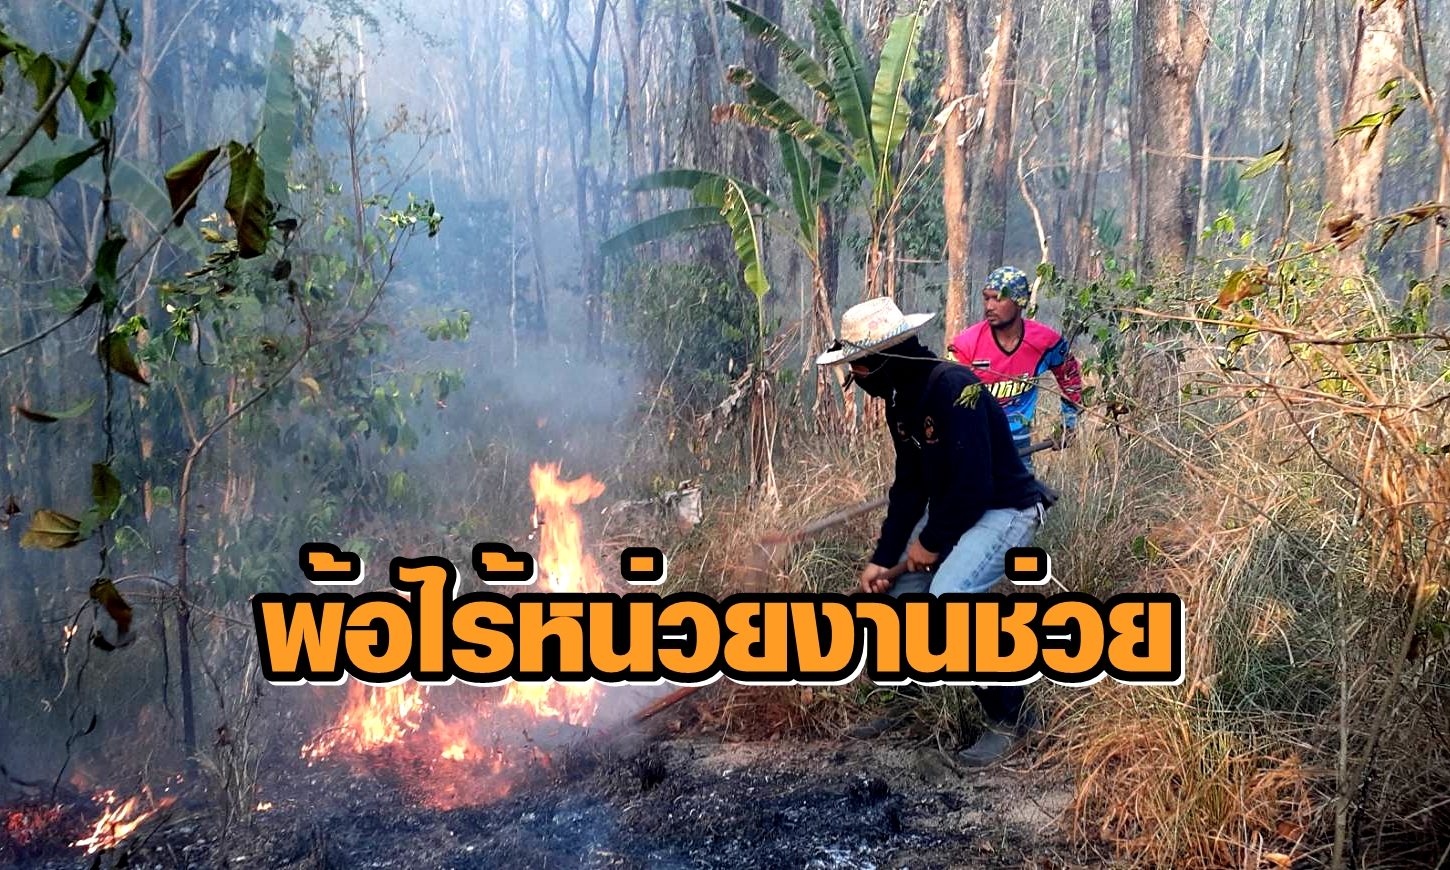 ไฟไหม้ป่าเขาจอมแห 2 วัน เสียหายกว่า 600 ไร่ จิตอาสาเผยไร้หน่วยงานช่วยเหลือ